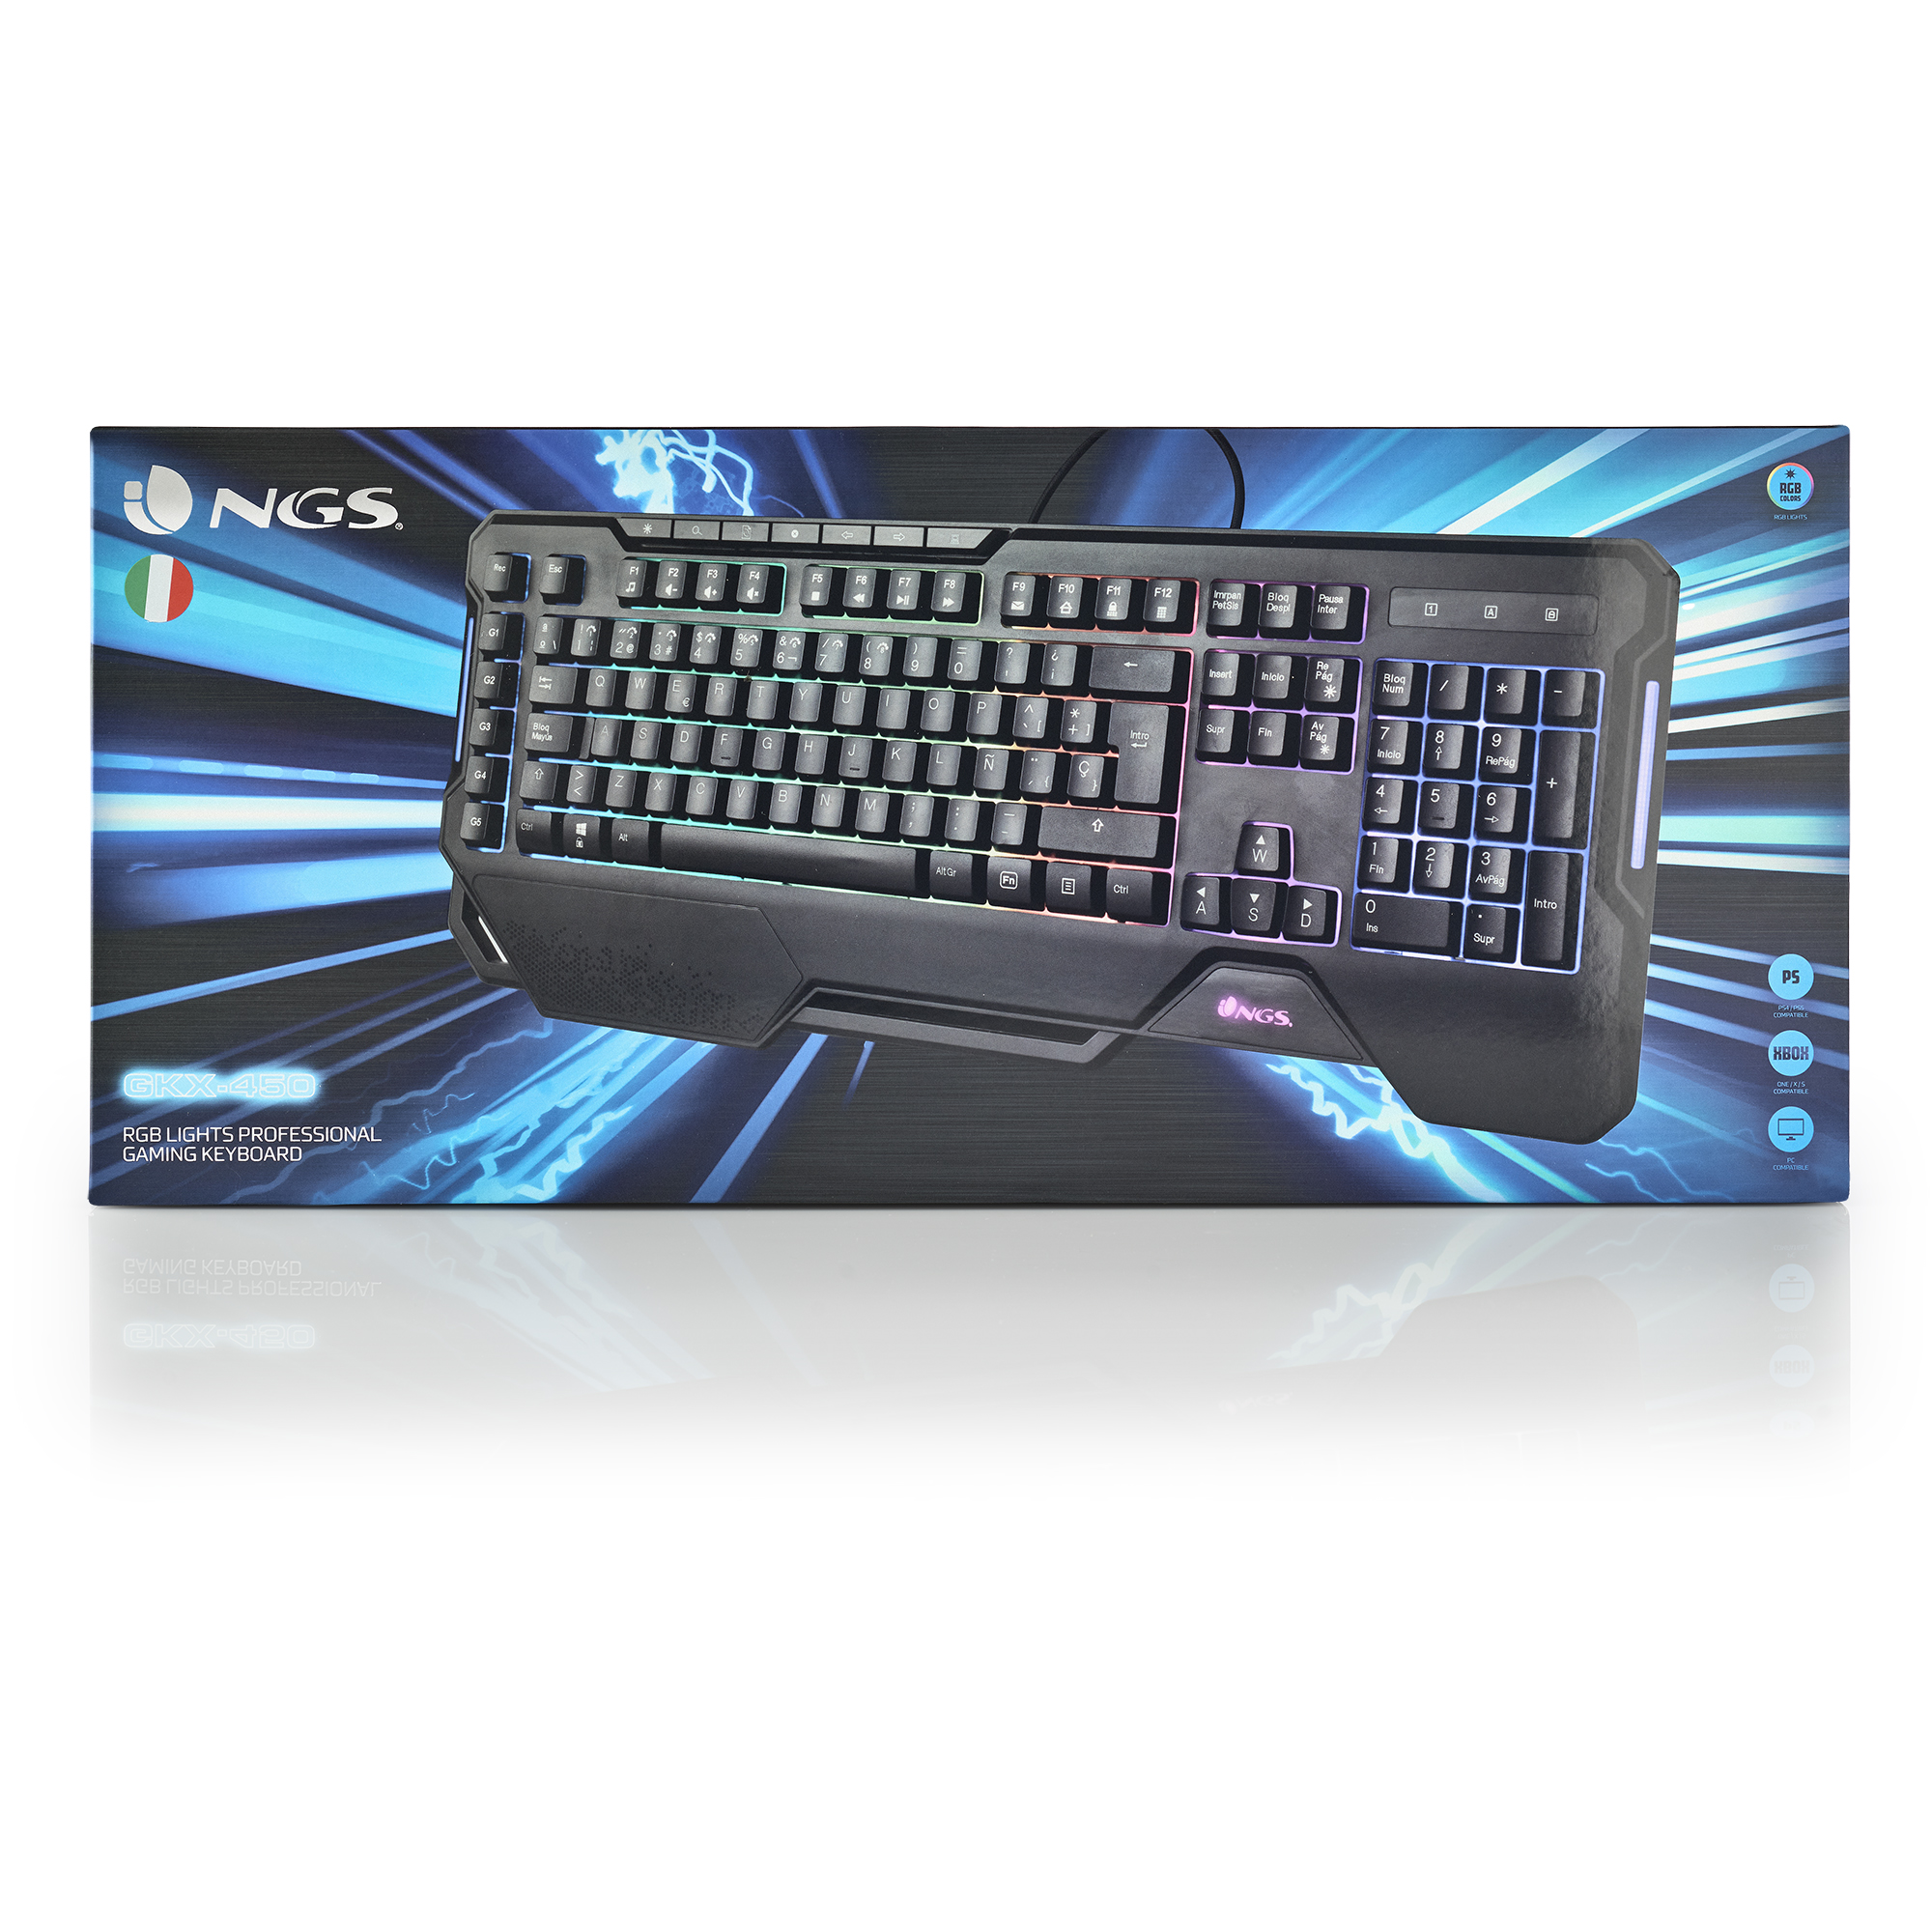 Mecha-Membran Gaming Tastatur, GKX-450ITALIAN, NGS